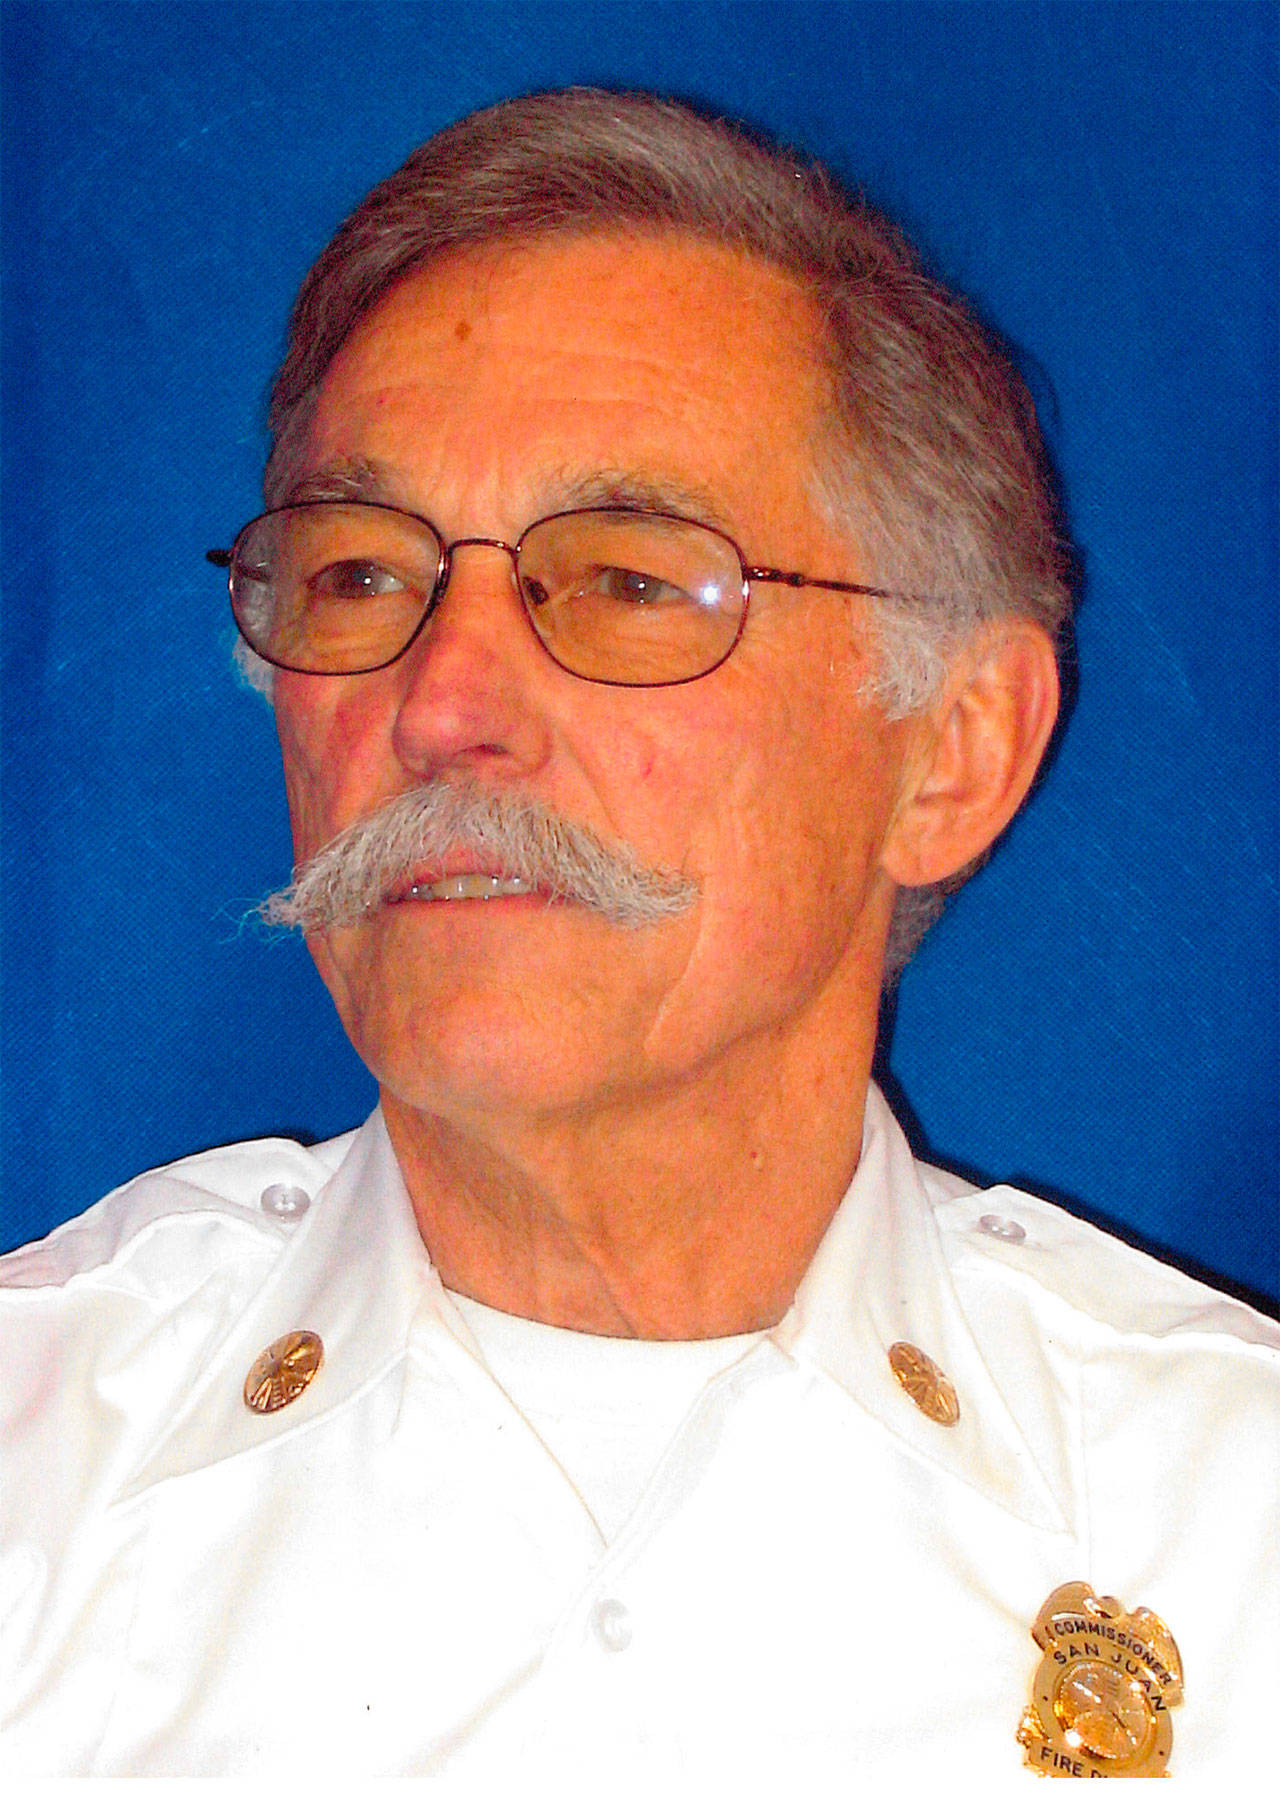 John Jensen retired as fire commissioner